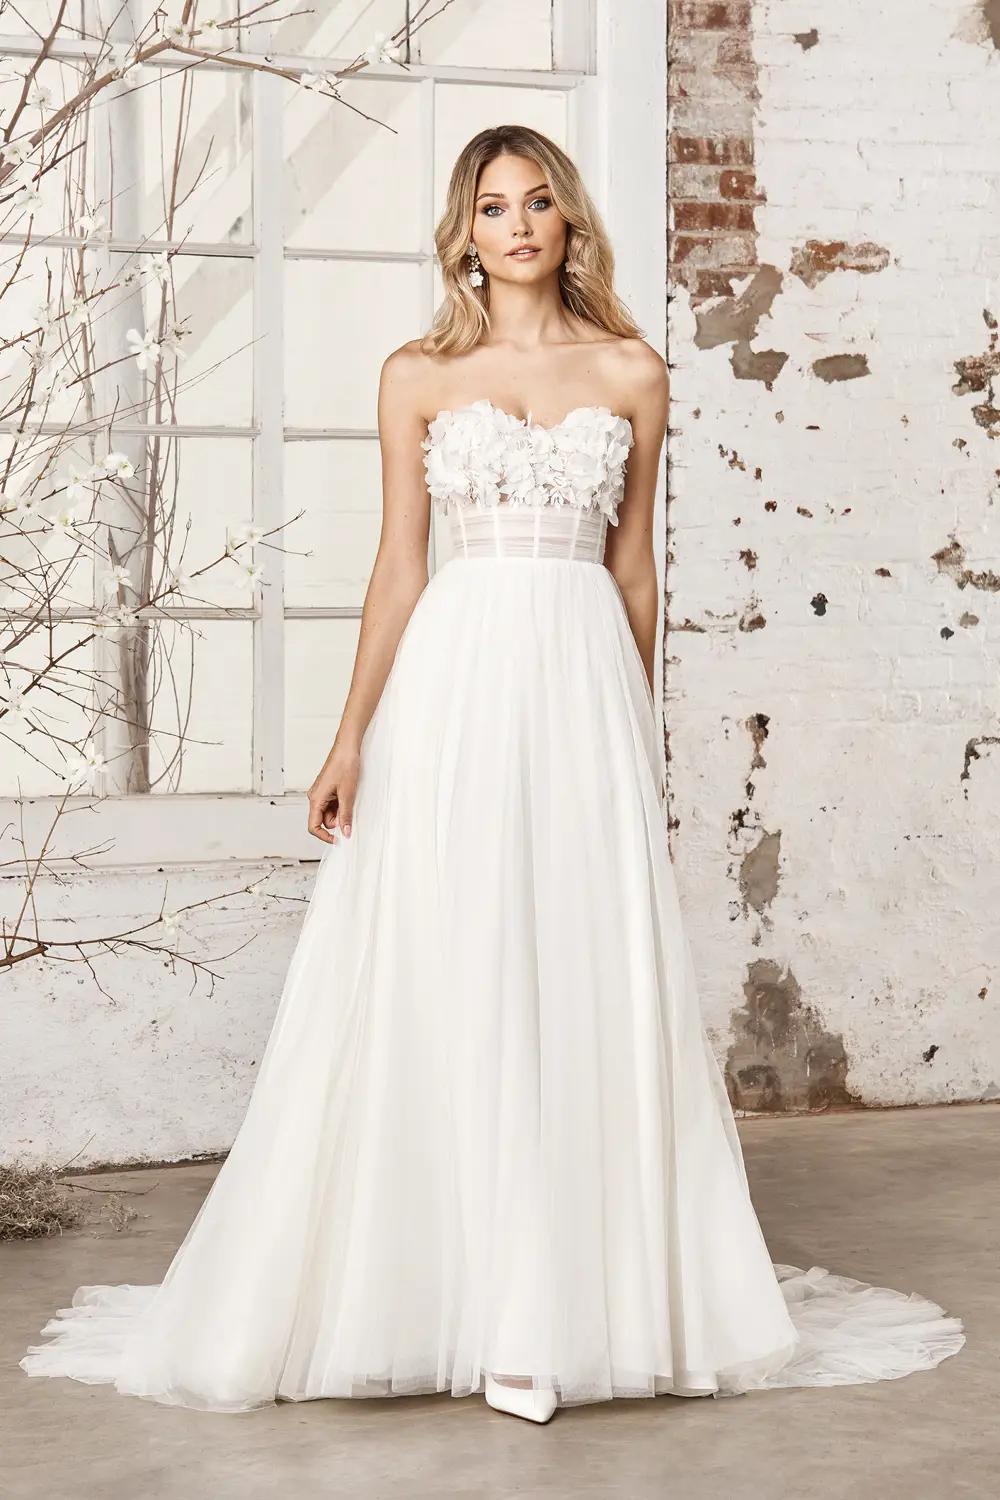 Strapless Ballgown Wedding Dress